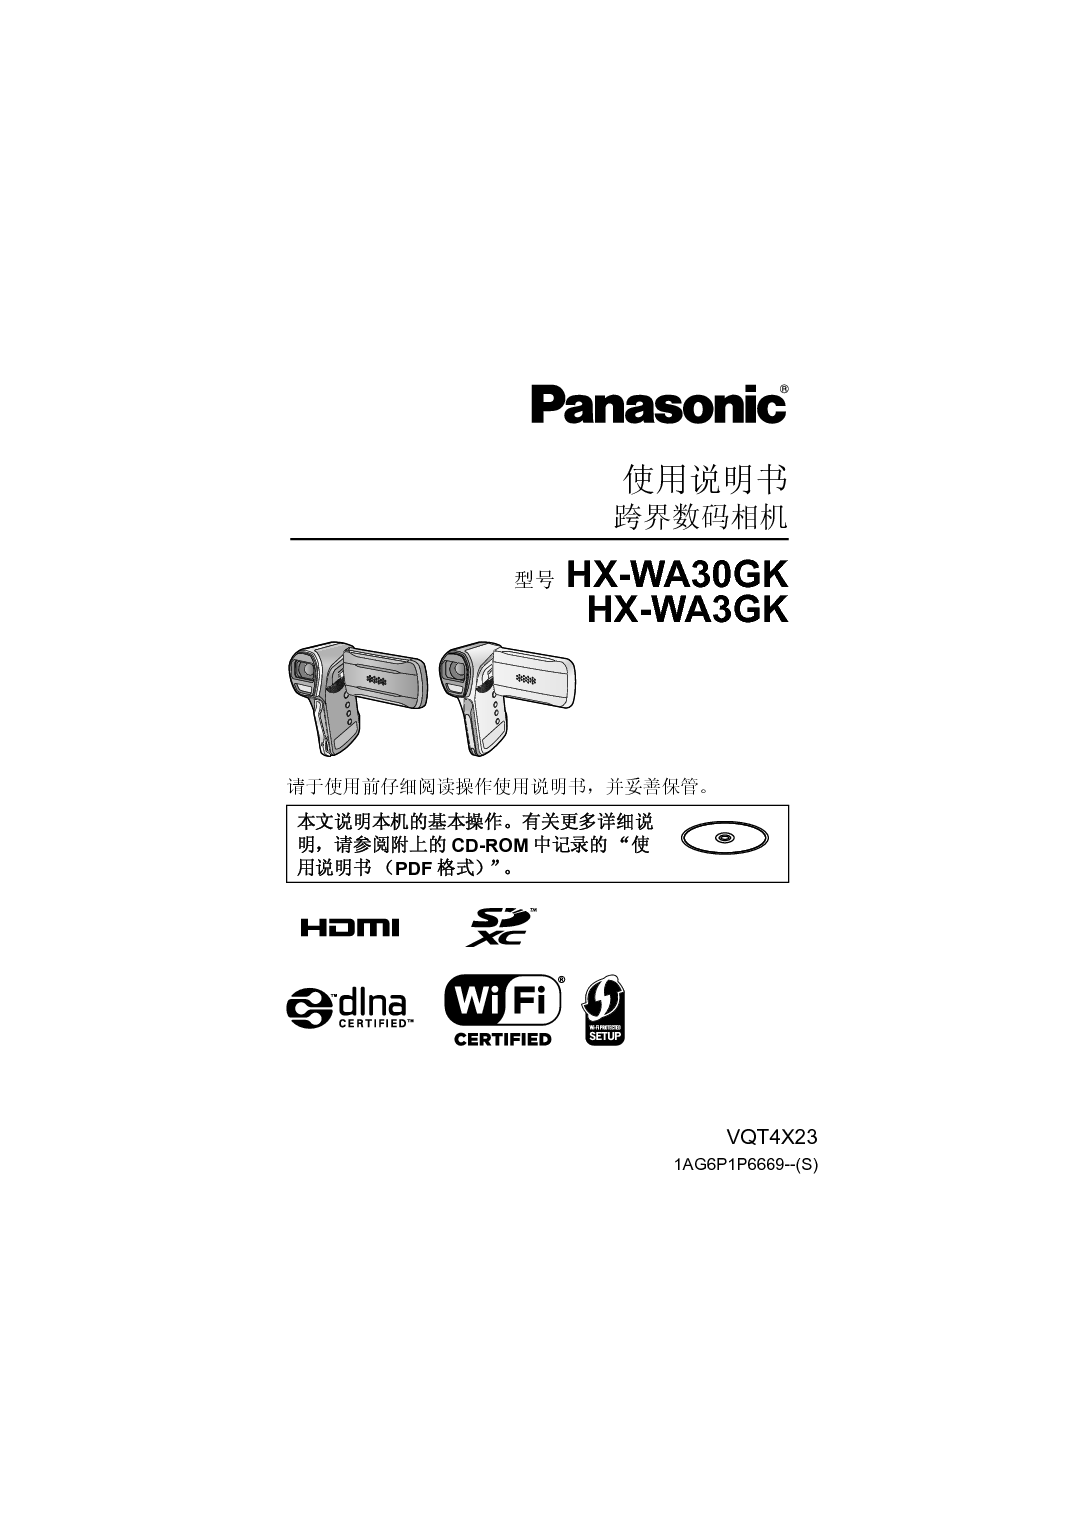 松下 Panasonic HX-WA30GK 说明书 封面